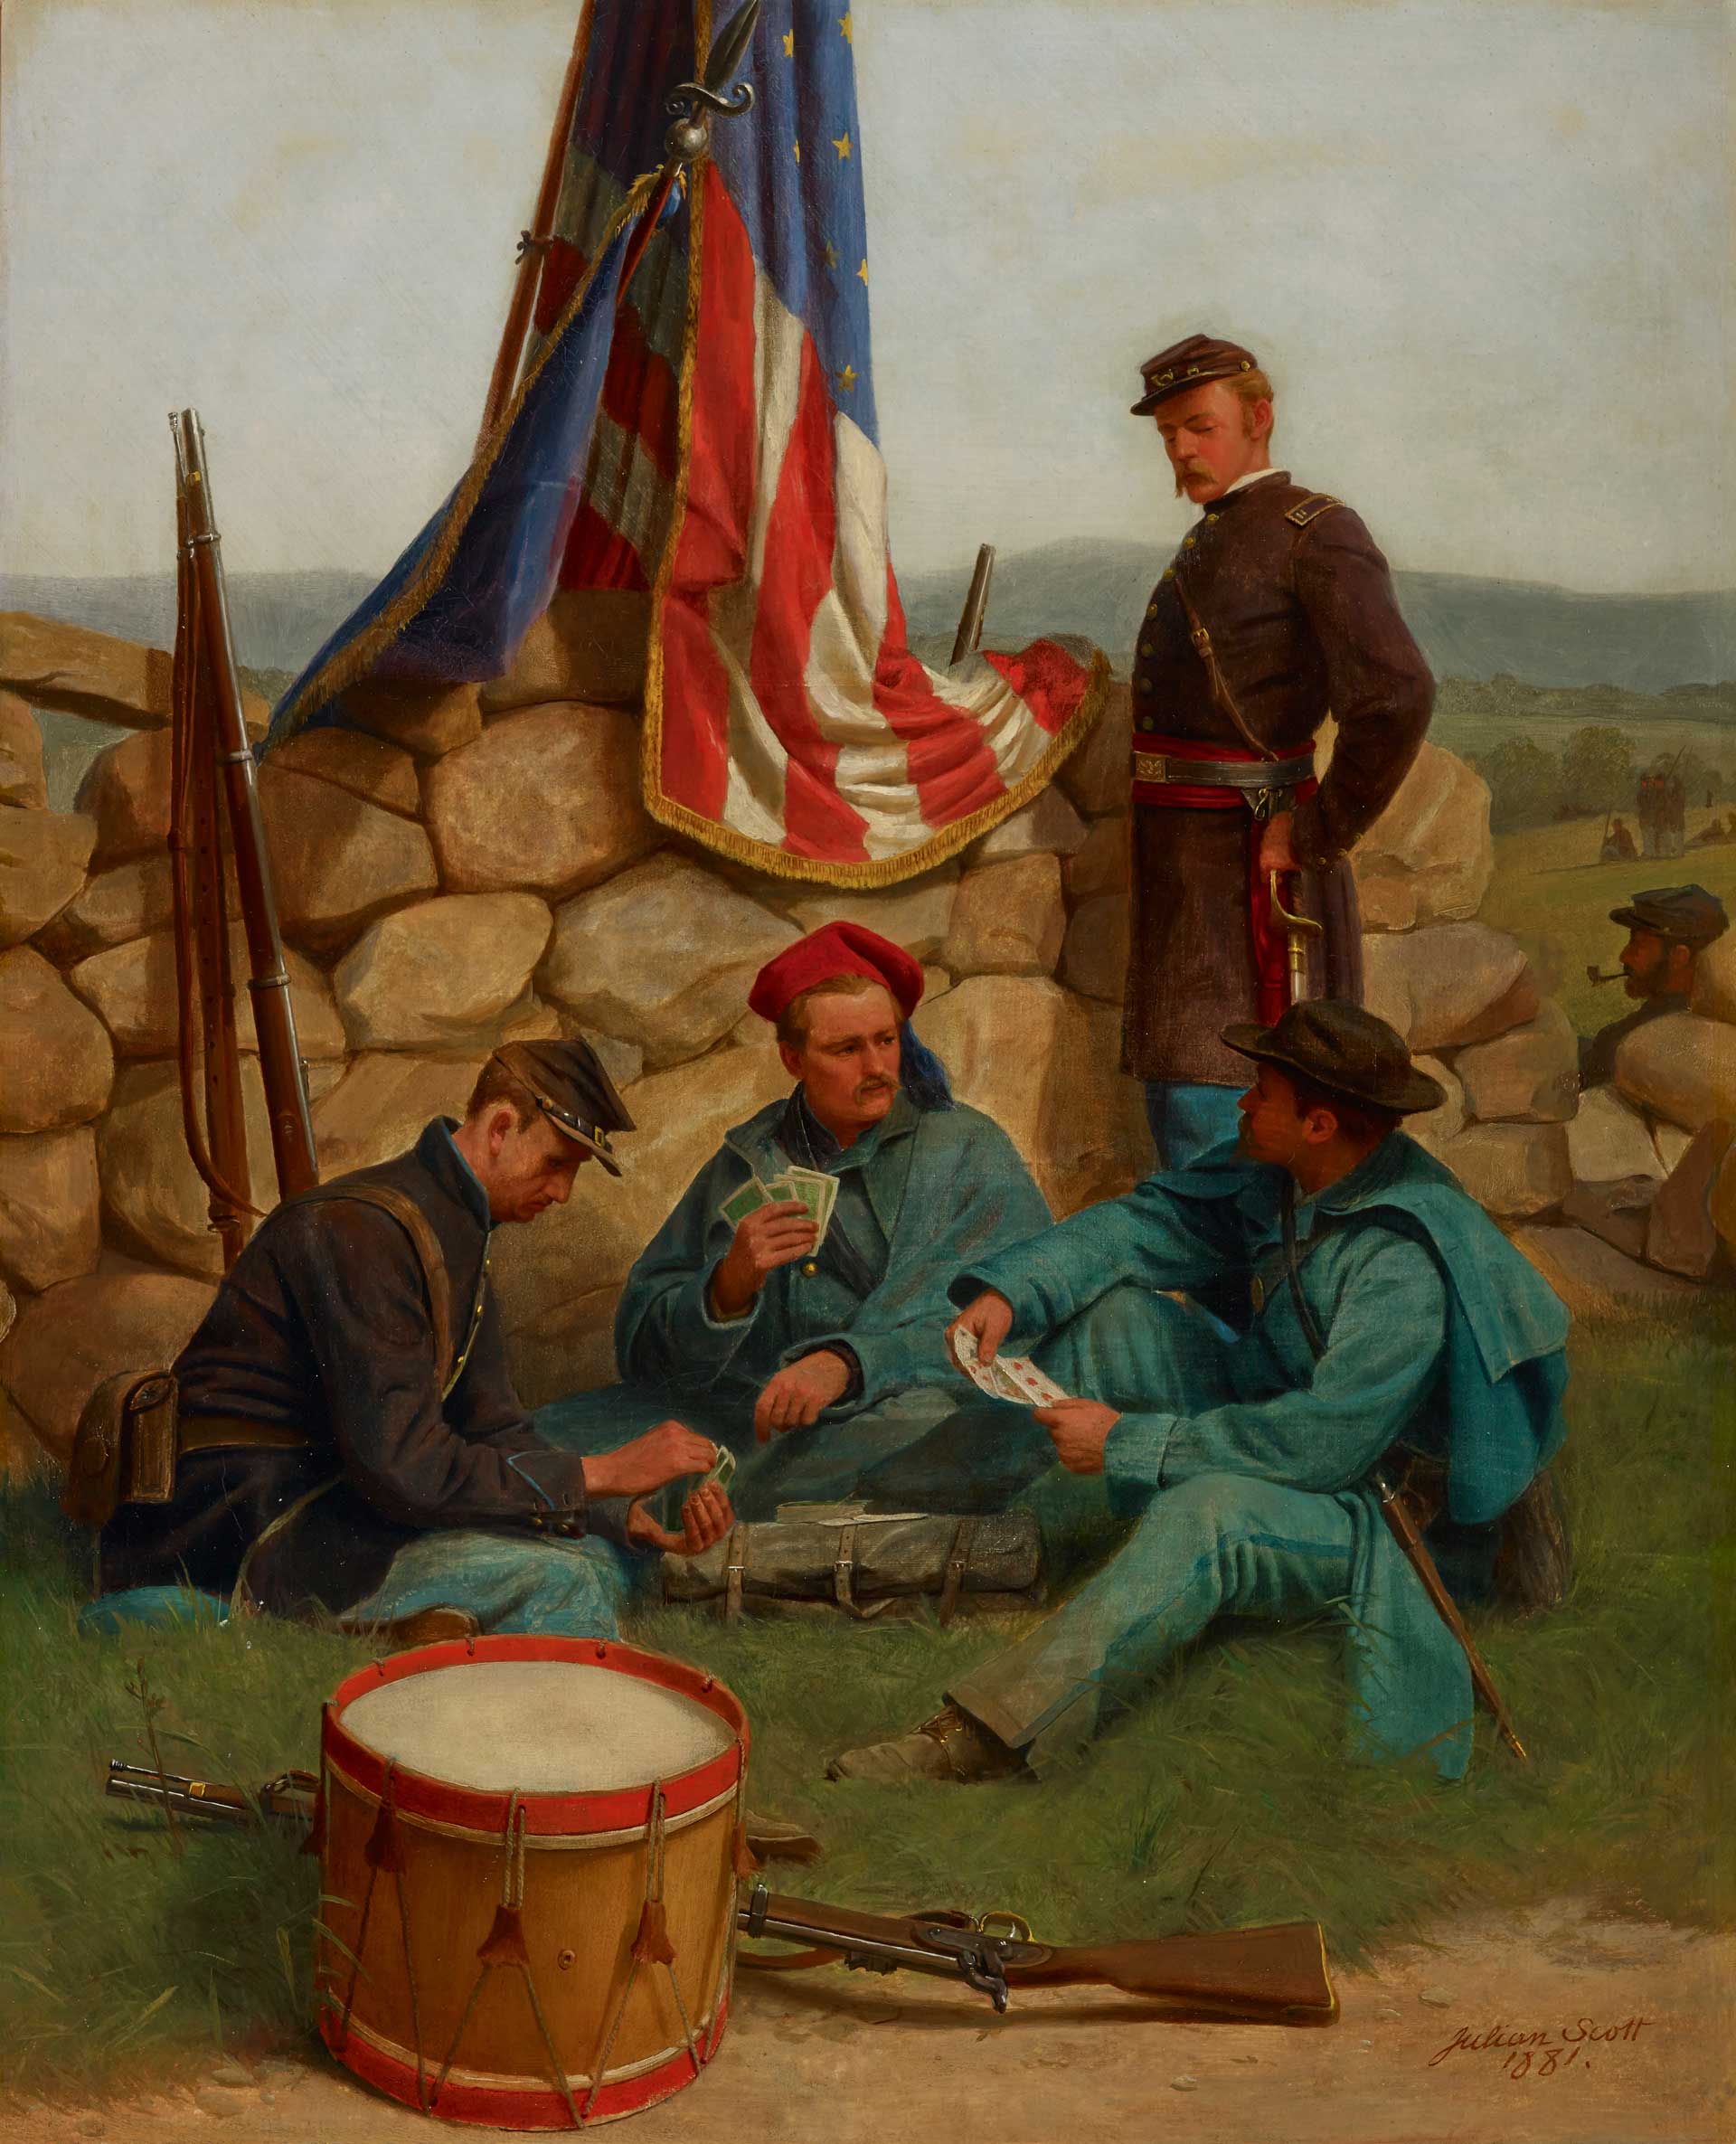 Julian Scott, A Break Playing Cards, 1861, oil on canvas.